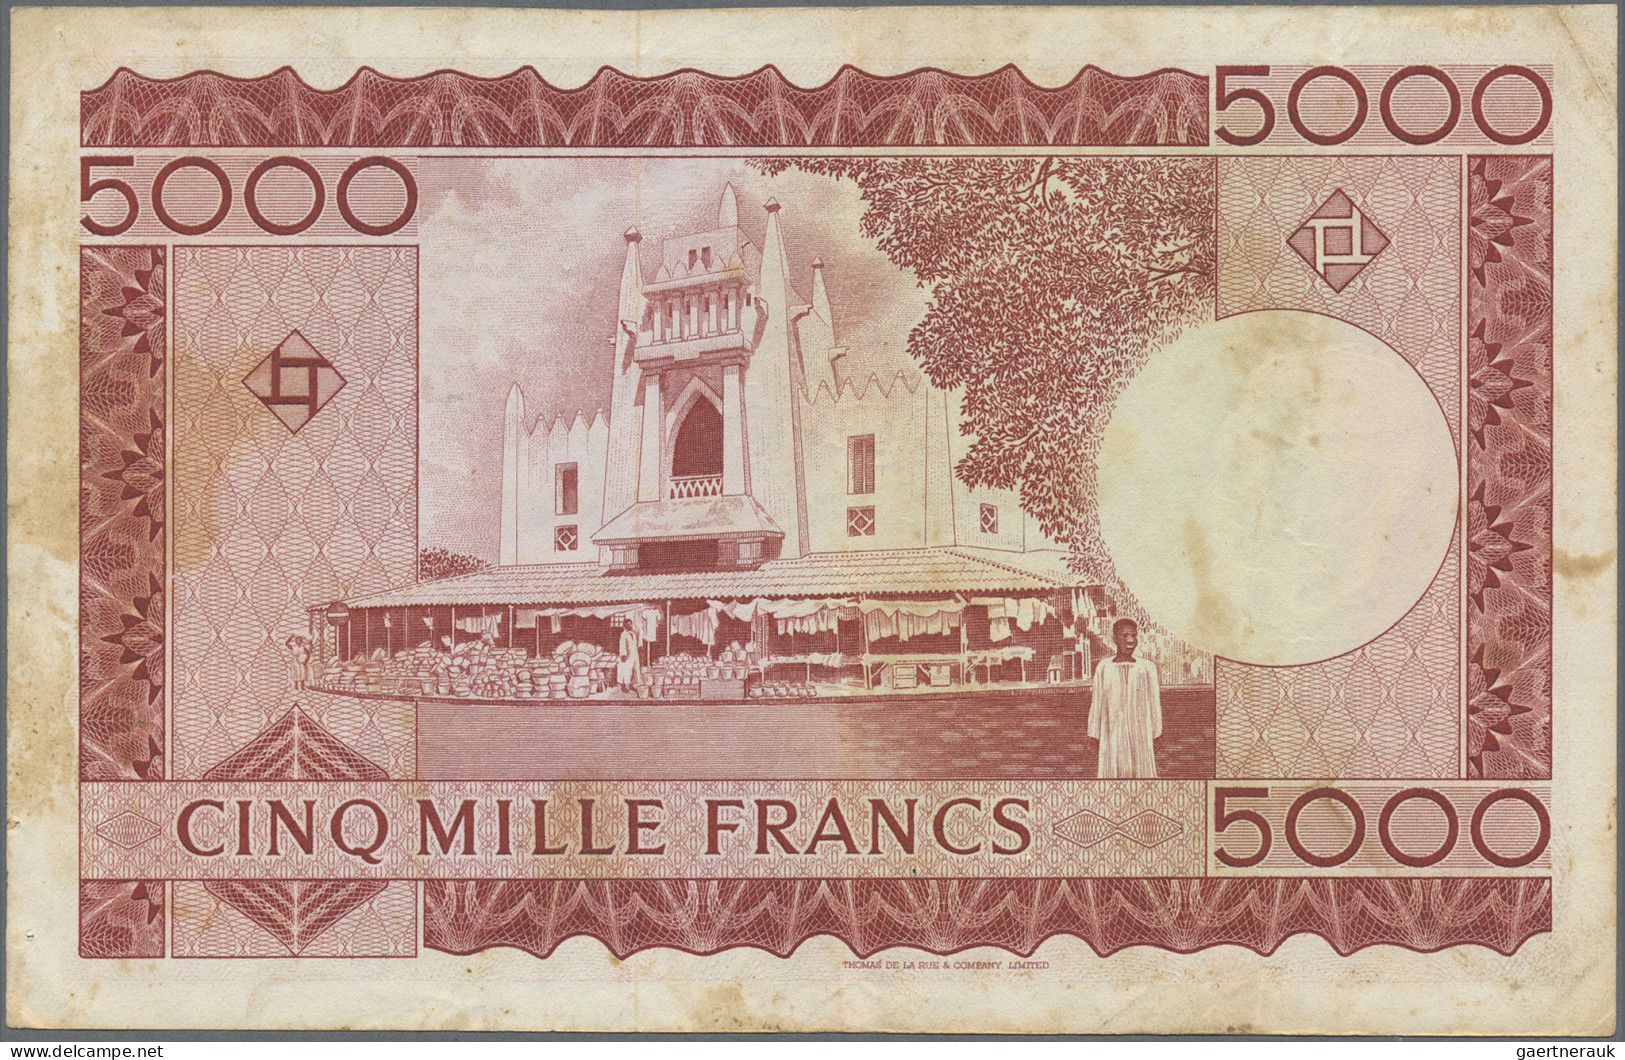 Mali: Banque de la République du Mali, lot with 4 banknotes, 1960 and L.1960 (ND